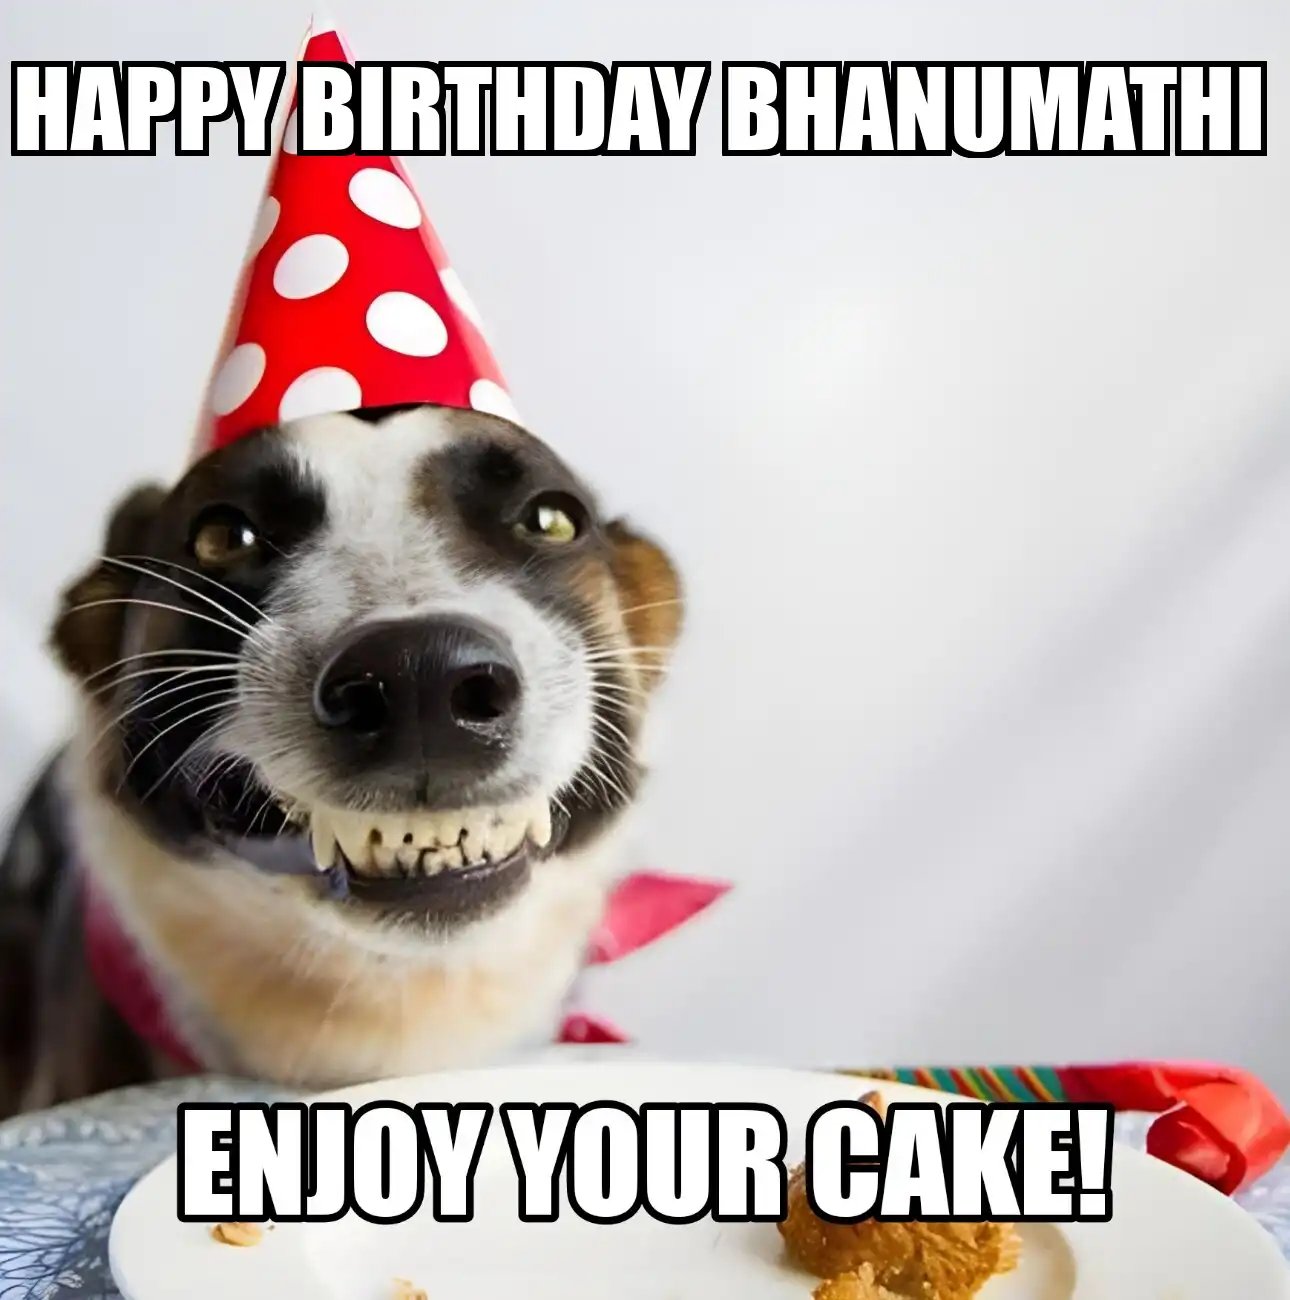 Happy Birthday Bhanumathi Enjoy Your Cake Dog Meme